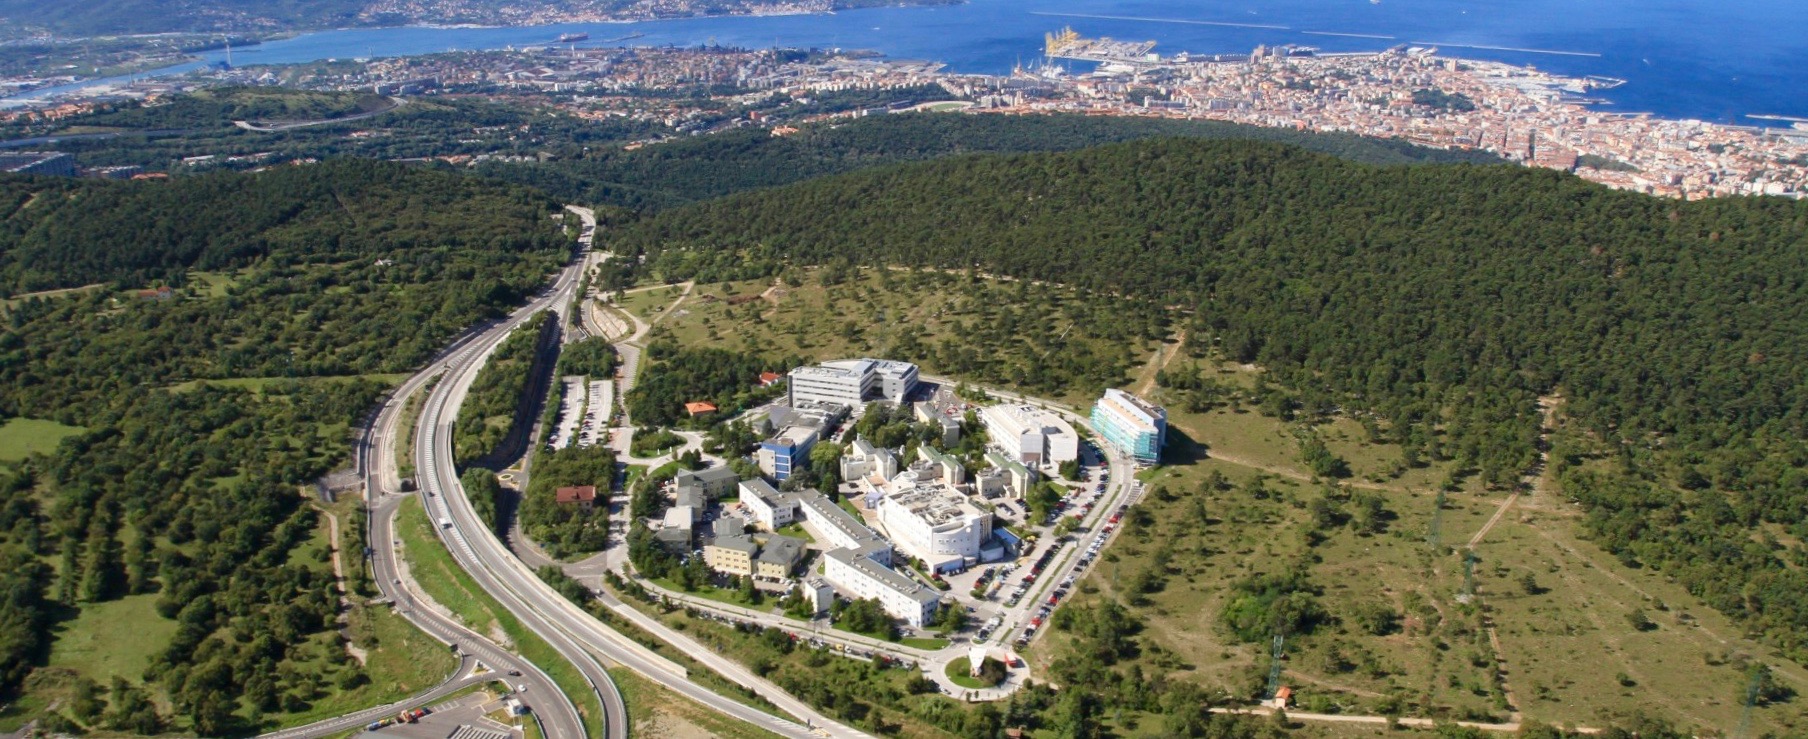 Area Scienze Park presenta Freeway Trieste al congresso della World Trade Centers Association